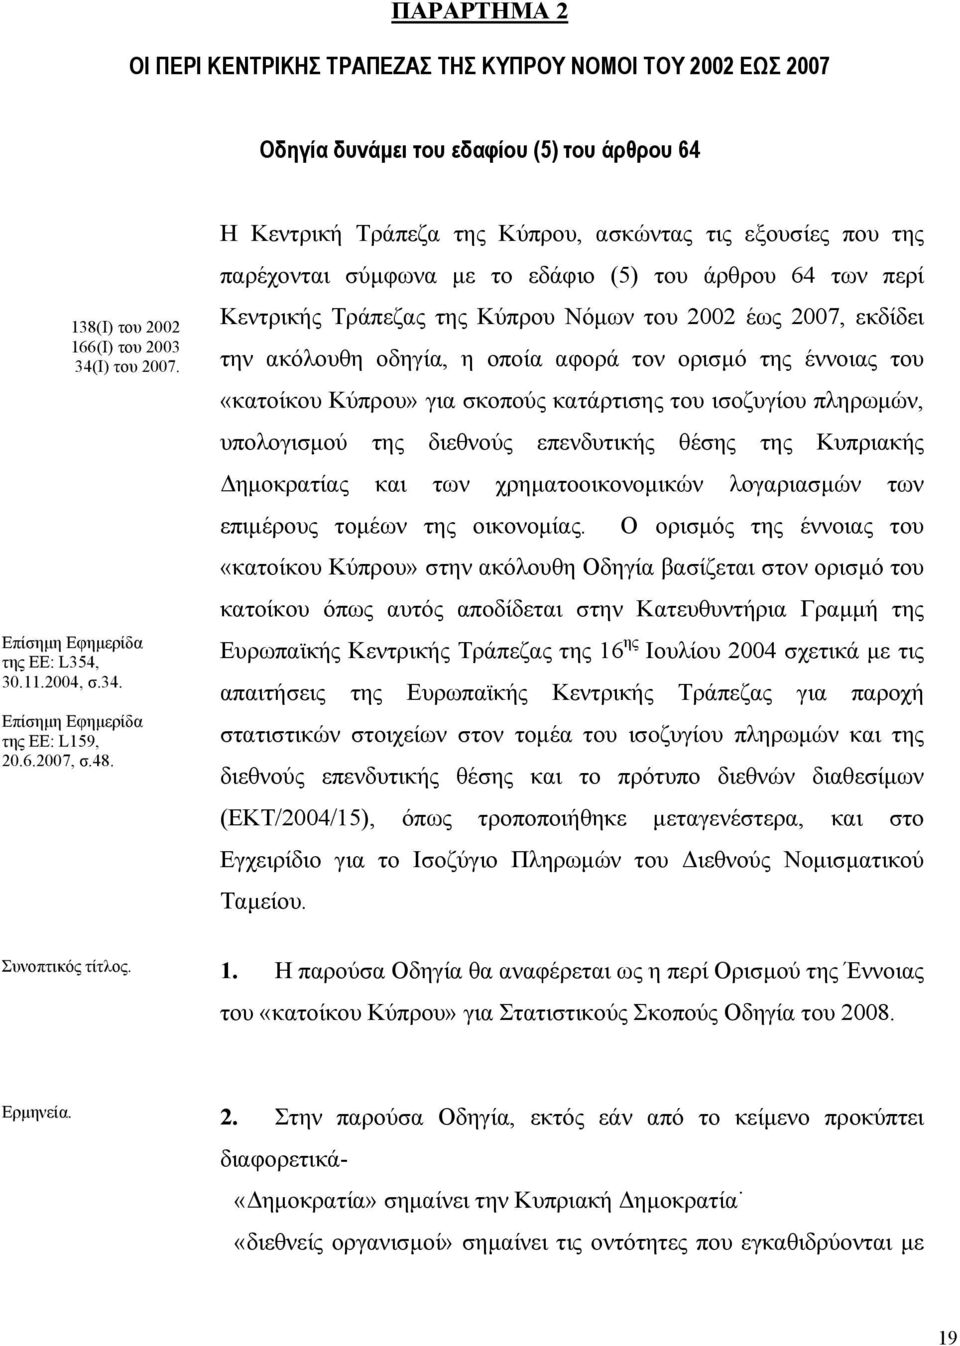 Η Κεντρική Τράπεζα της Κύπρου, ασκώντας τις εξουσίες που της παρέχονται σύµφωνα µε το εδάφιο (5) του άρθρου 64 των περί Κεντρικής Τράπεζας της Κύπρου Νόµων του 2002 έως 2007, εκδίδει την ακόλουθη